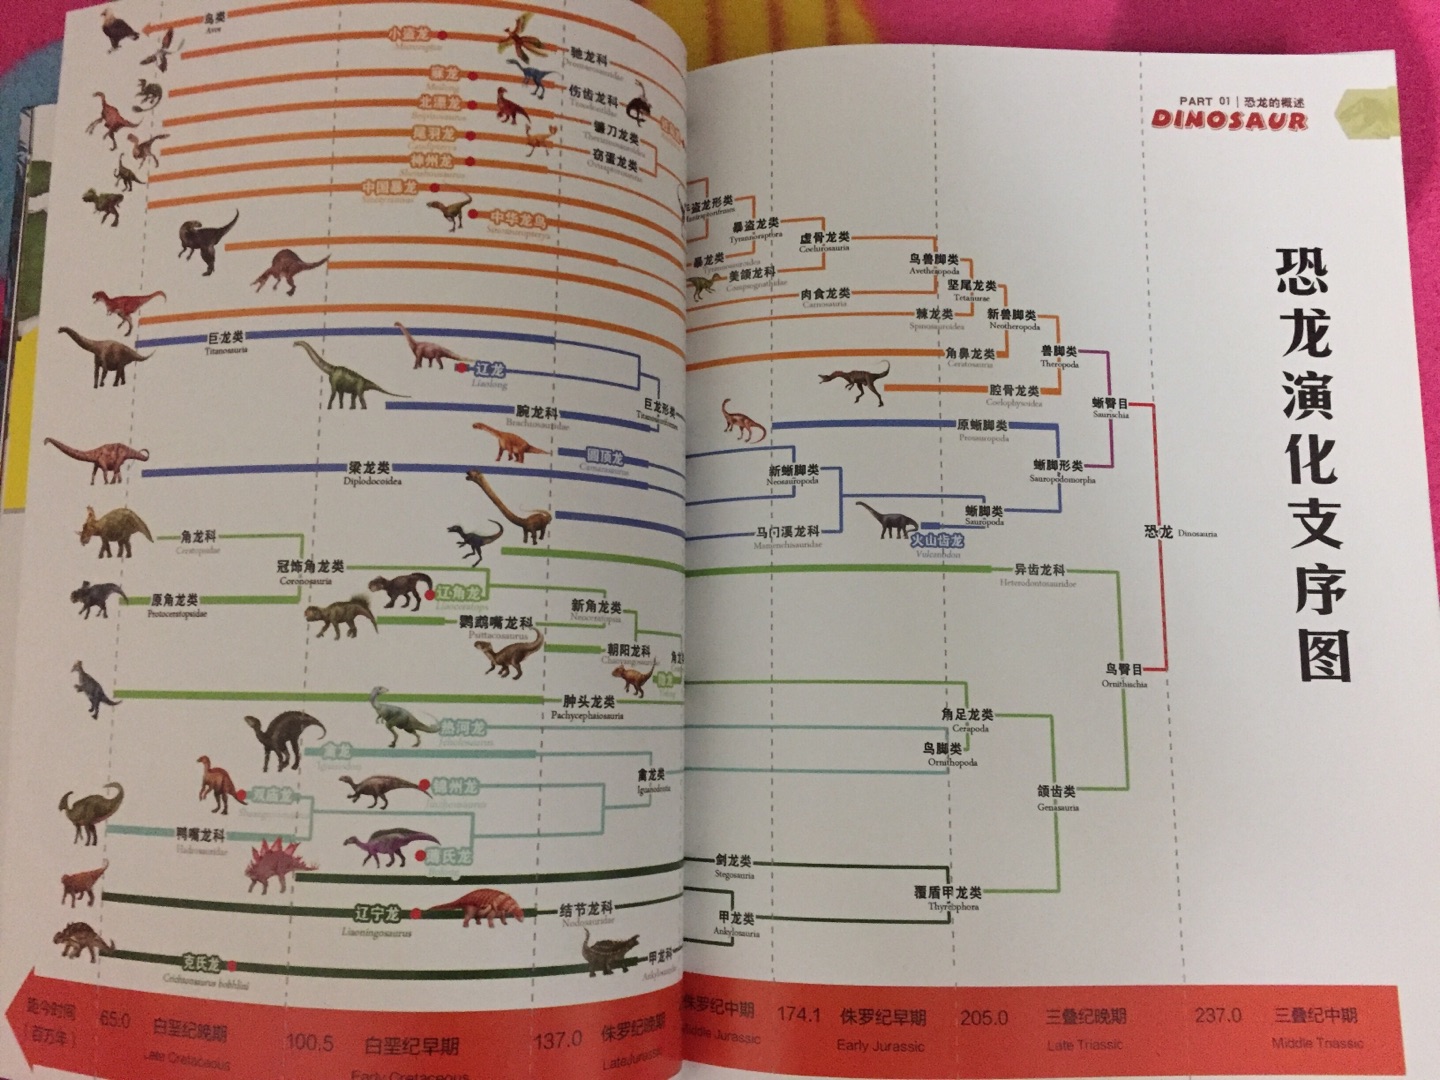 中国恐龙百科全书由“中国恐龙之父”董枝明编著。书中栩栩如生地从恐龙的起源、发展、和灭绝的历程讲起，精选160余种中国特有的恐龙，按照不同的年代（侏罗纪、白垩纪）进行详细介绍，辅以精心绘制的插画，力求还原真实的中国恐龙面貌，让孩子了解中国独有的恐龙。书开头概述部分在时间轴上汇总了书中提到的恐龙，小朋友对这些恐龙出现的先后顺序可以一目了然。后面逐一对恐龙予以讲解，包括它们的分类、分布、特点、资料档案等，内容严谨又不失趣味，绝对是一本可以传承的好书。